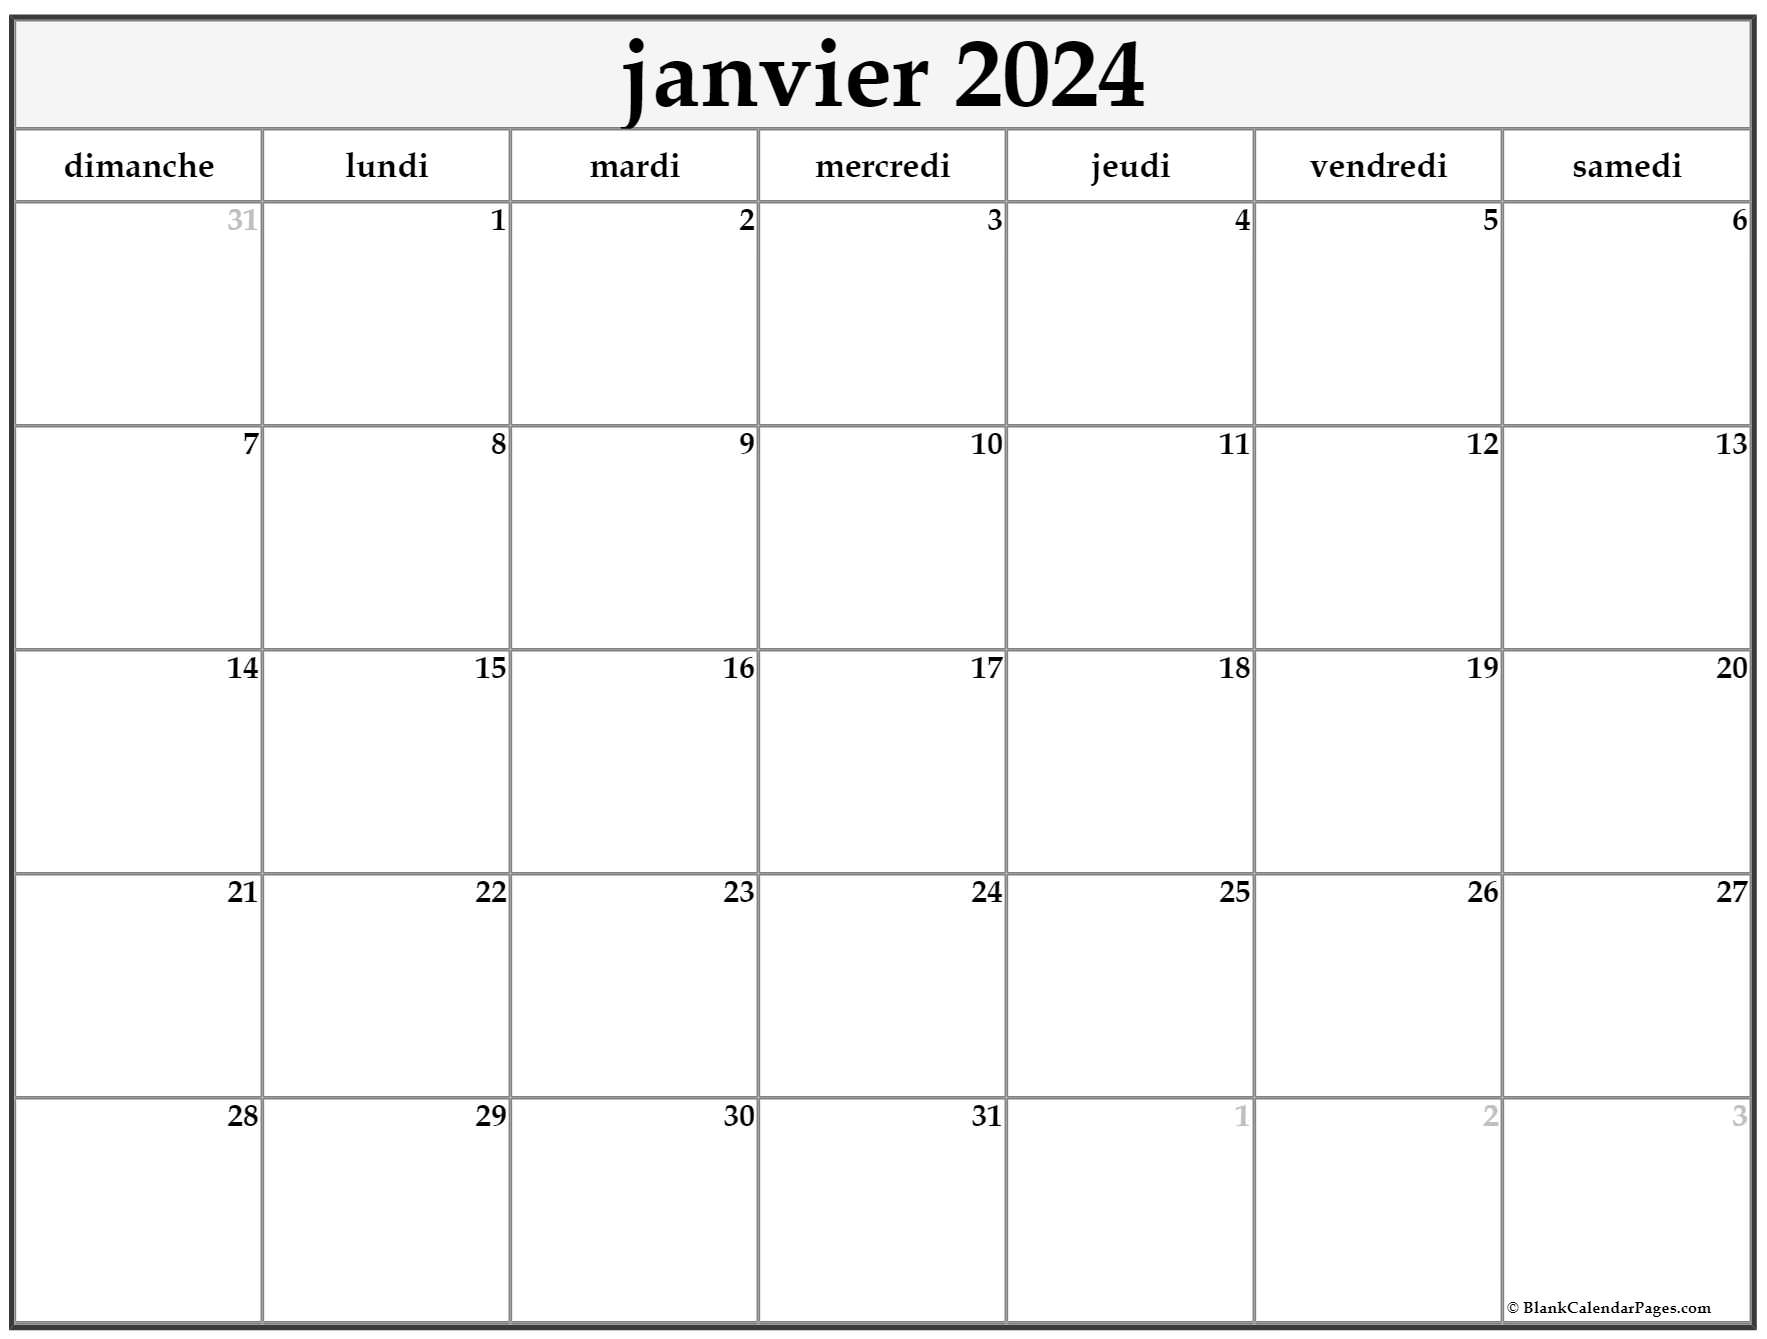 janvier 2024 calendrier imprimable | Calendrier gratuit